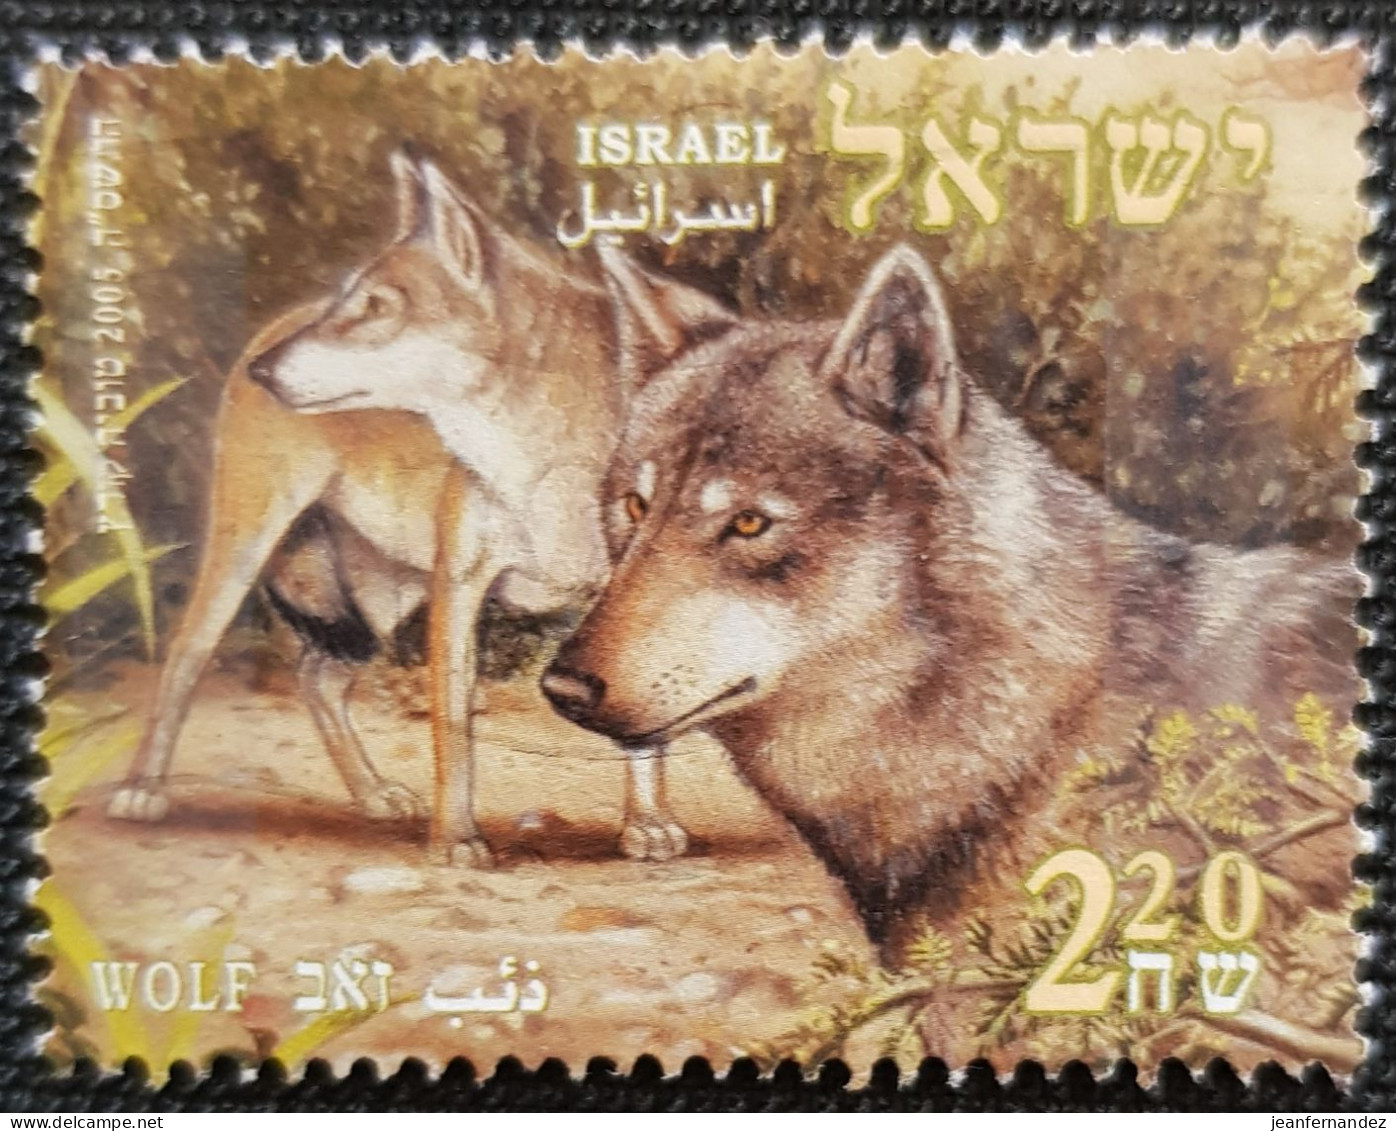 Israel 2005 Biblical Animal Stampworld N° 1805 - Gebruikt (zonder Tabs)